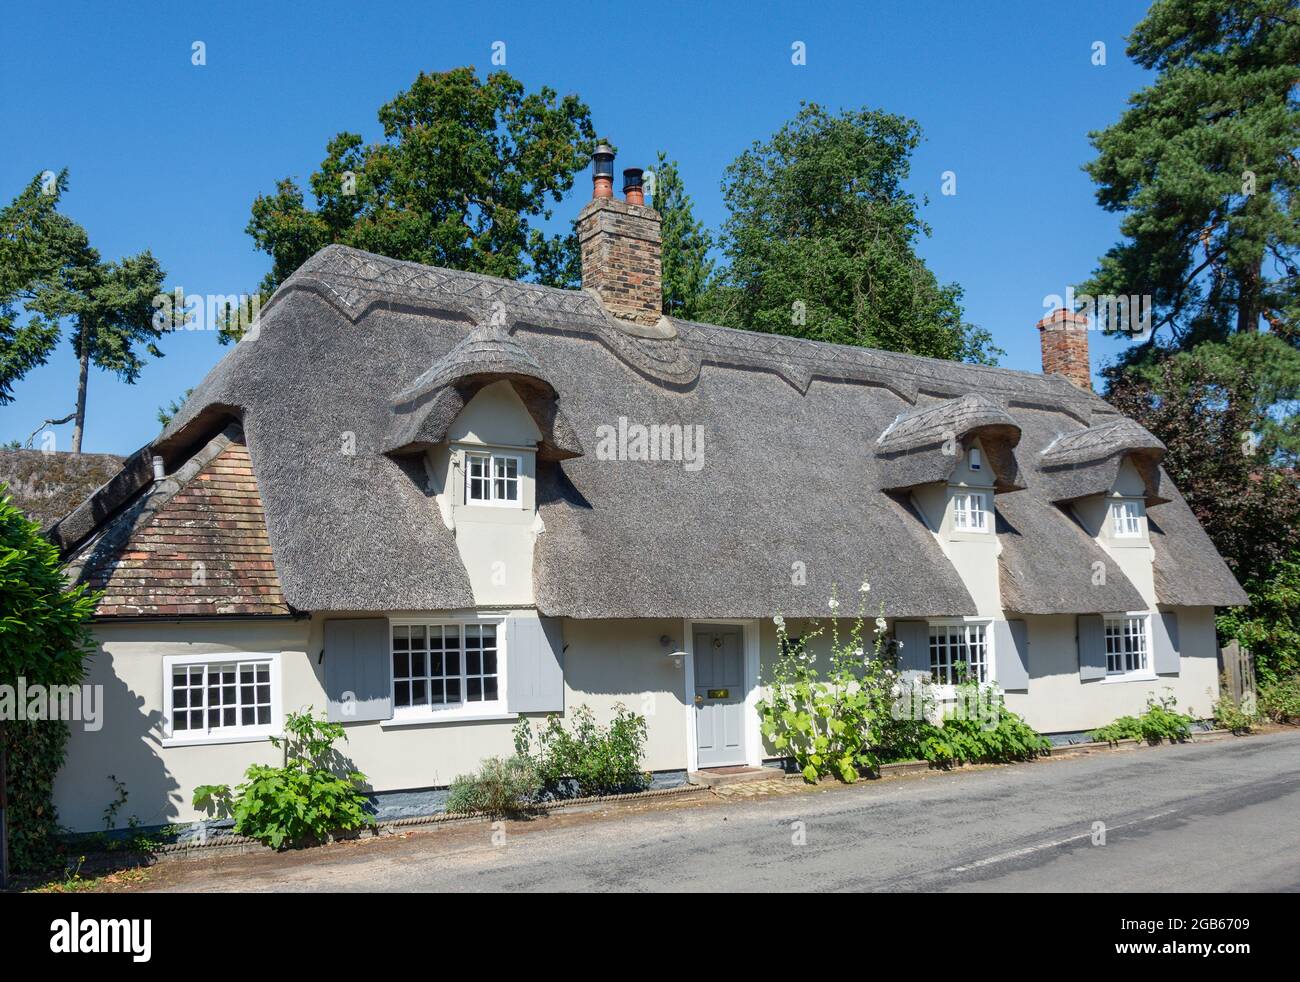 Thatched cottage, Hemingford Abbots, Cambridgeshire, England, United Kingdom Stock Photo